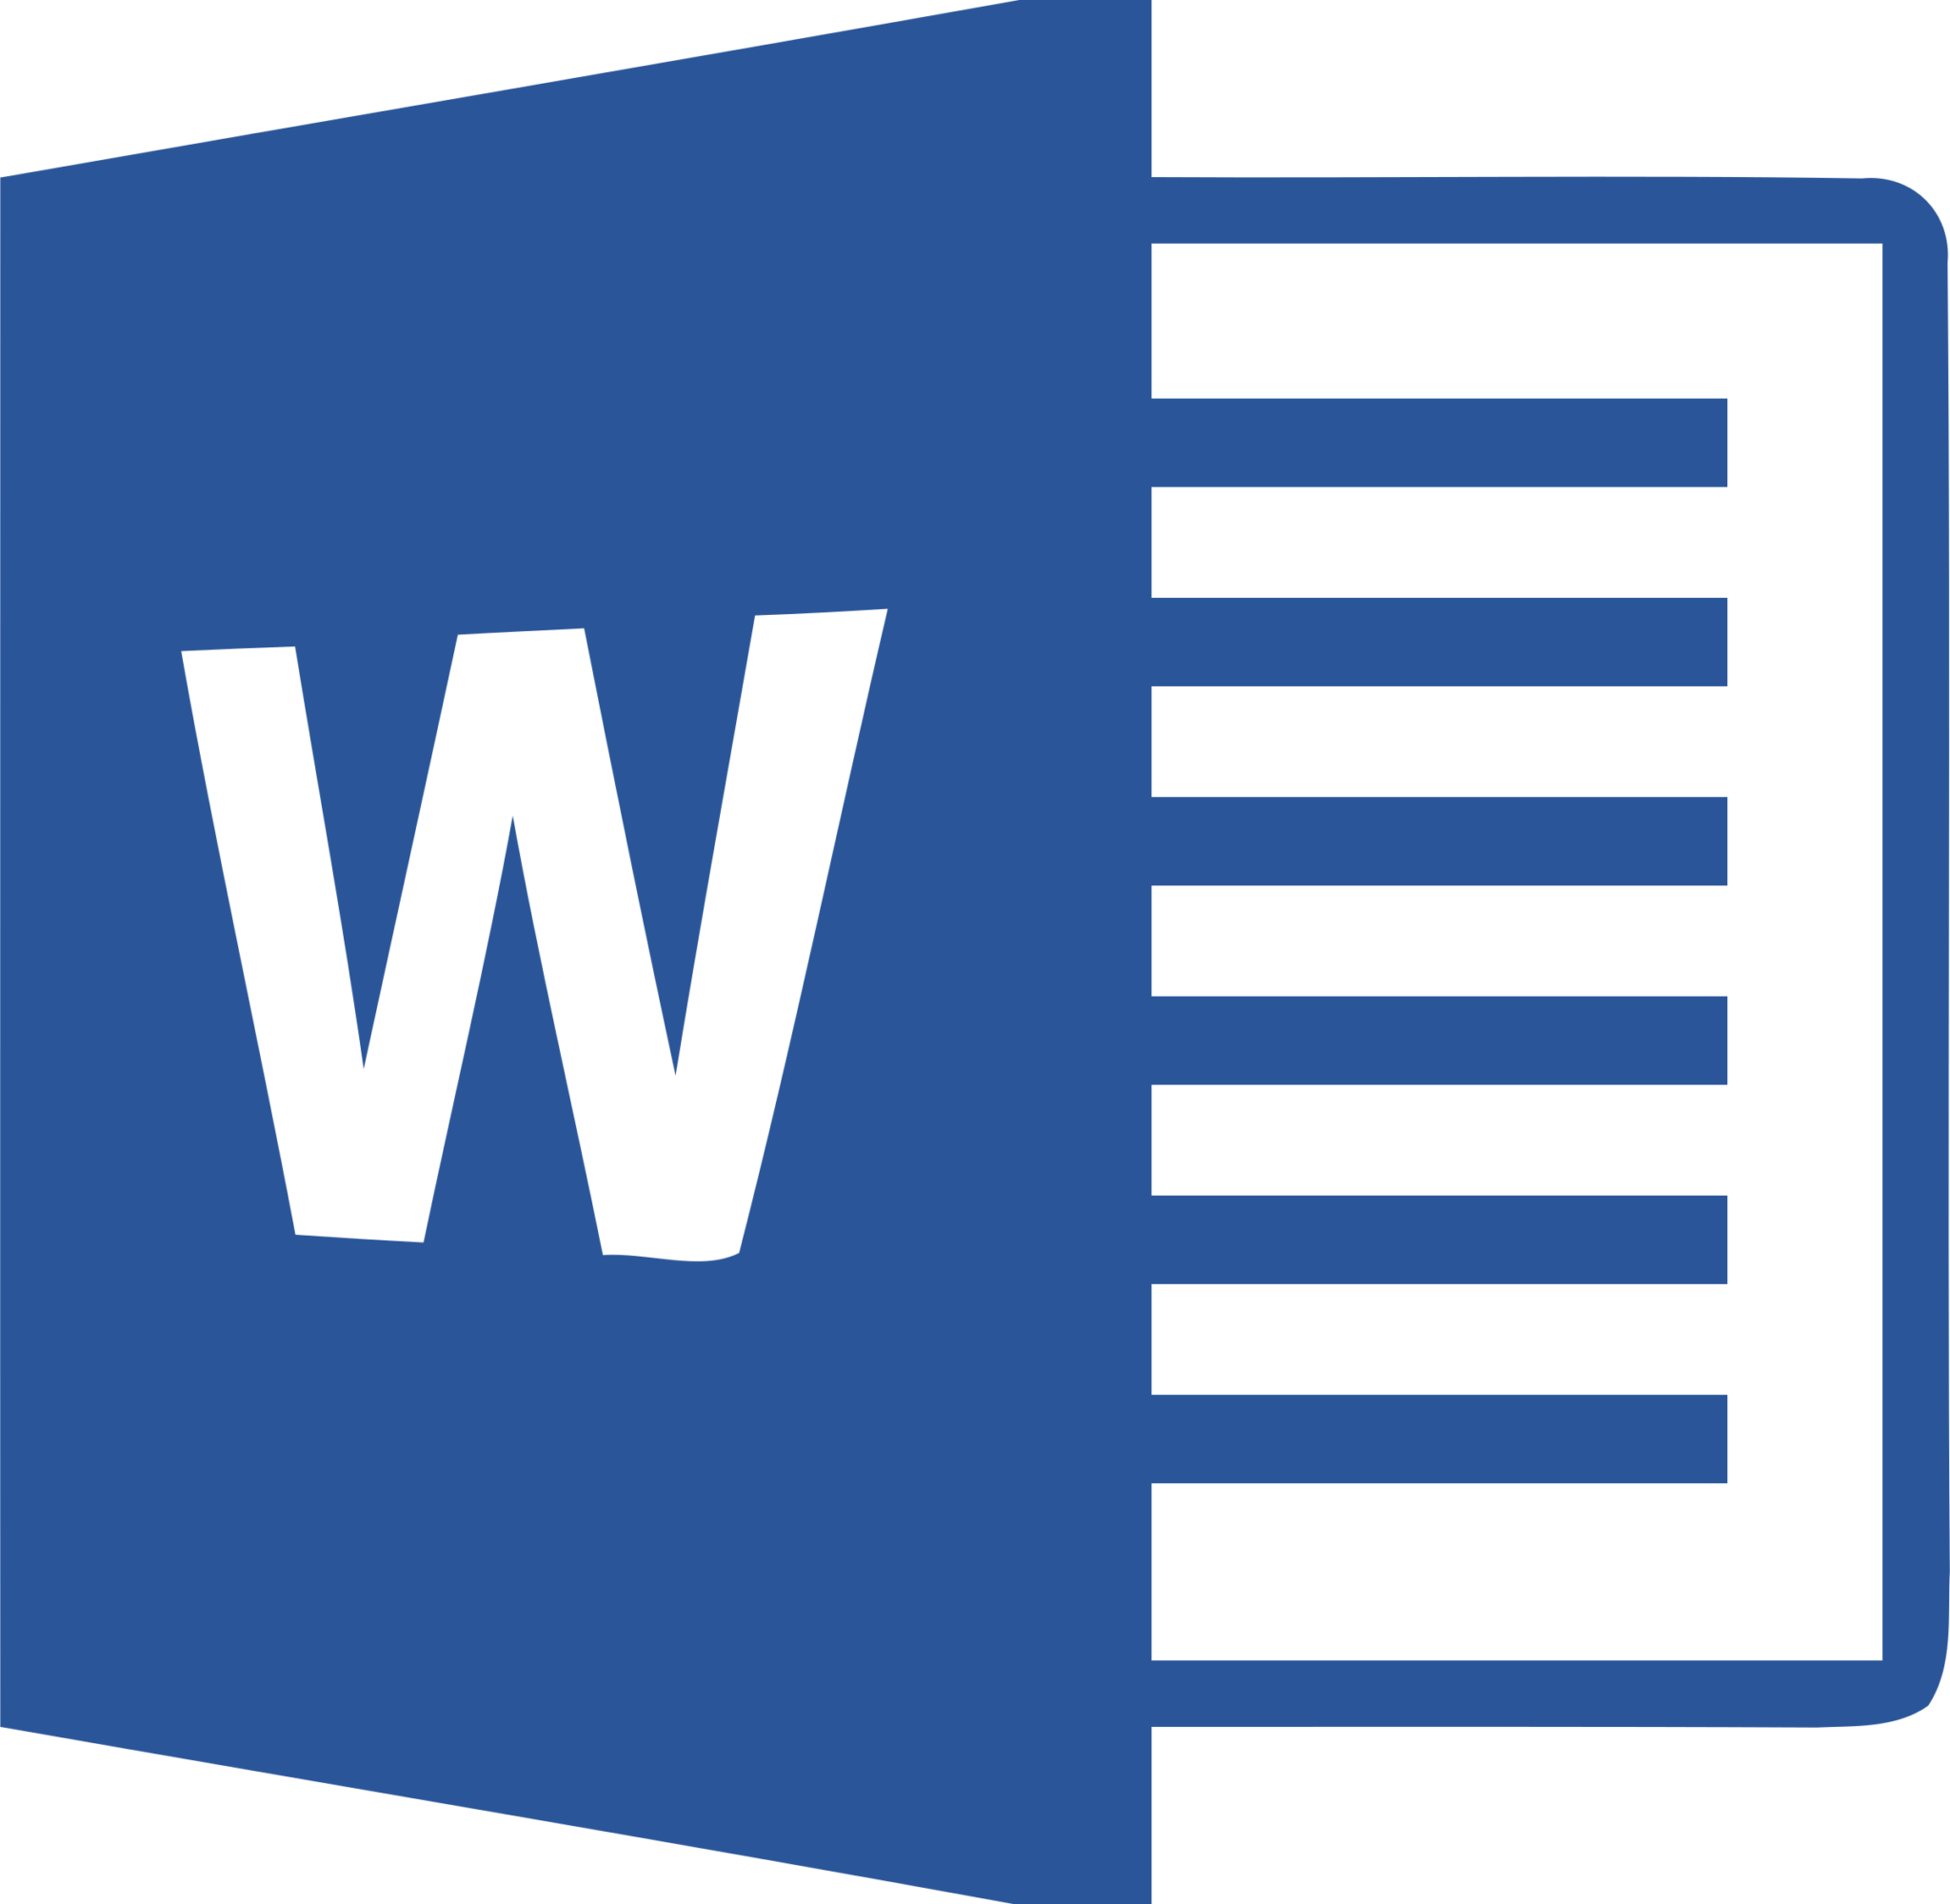 Ворж. Microsoft Word логотип. Значок Microsoft Office Word. Значок ворд 2007. Microsoft Office Word 2016 иконка.